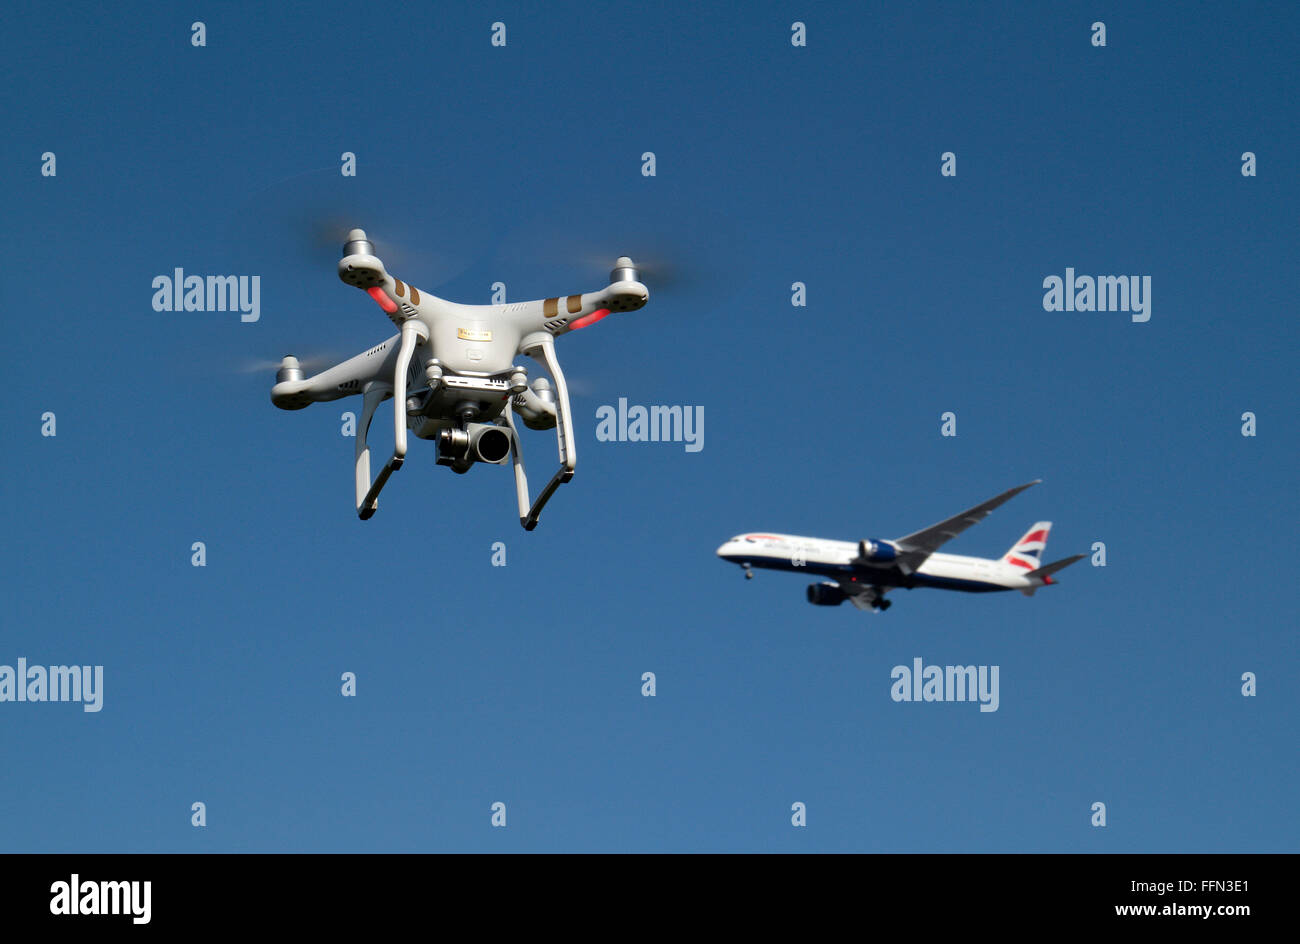 Aereo dei droni immagini e fotografie stock ad alta risoluzione - Alamy